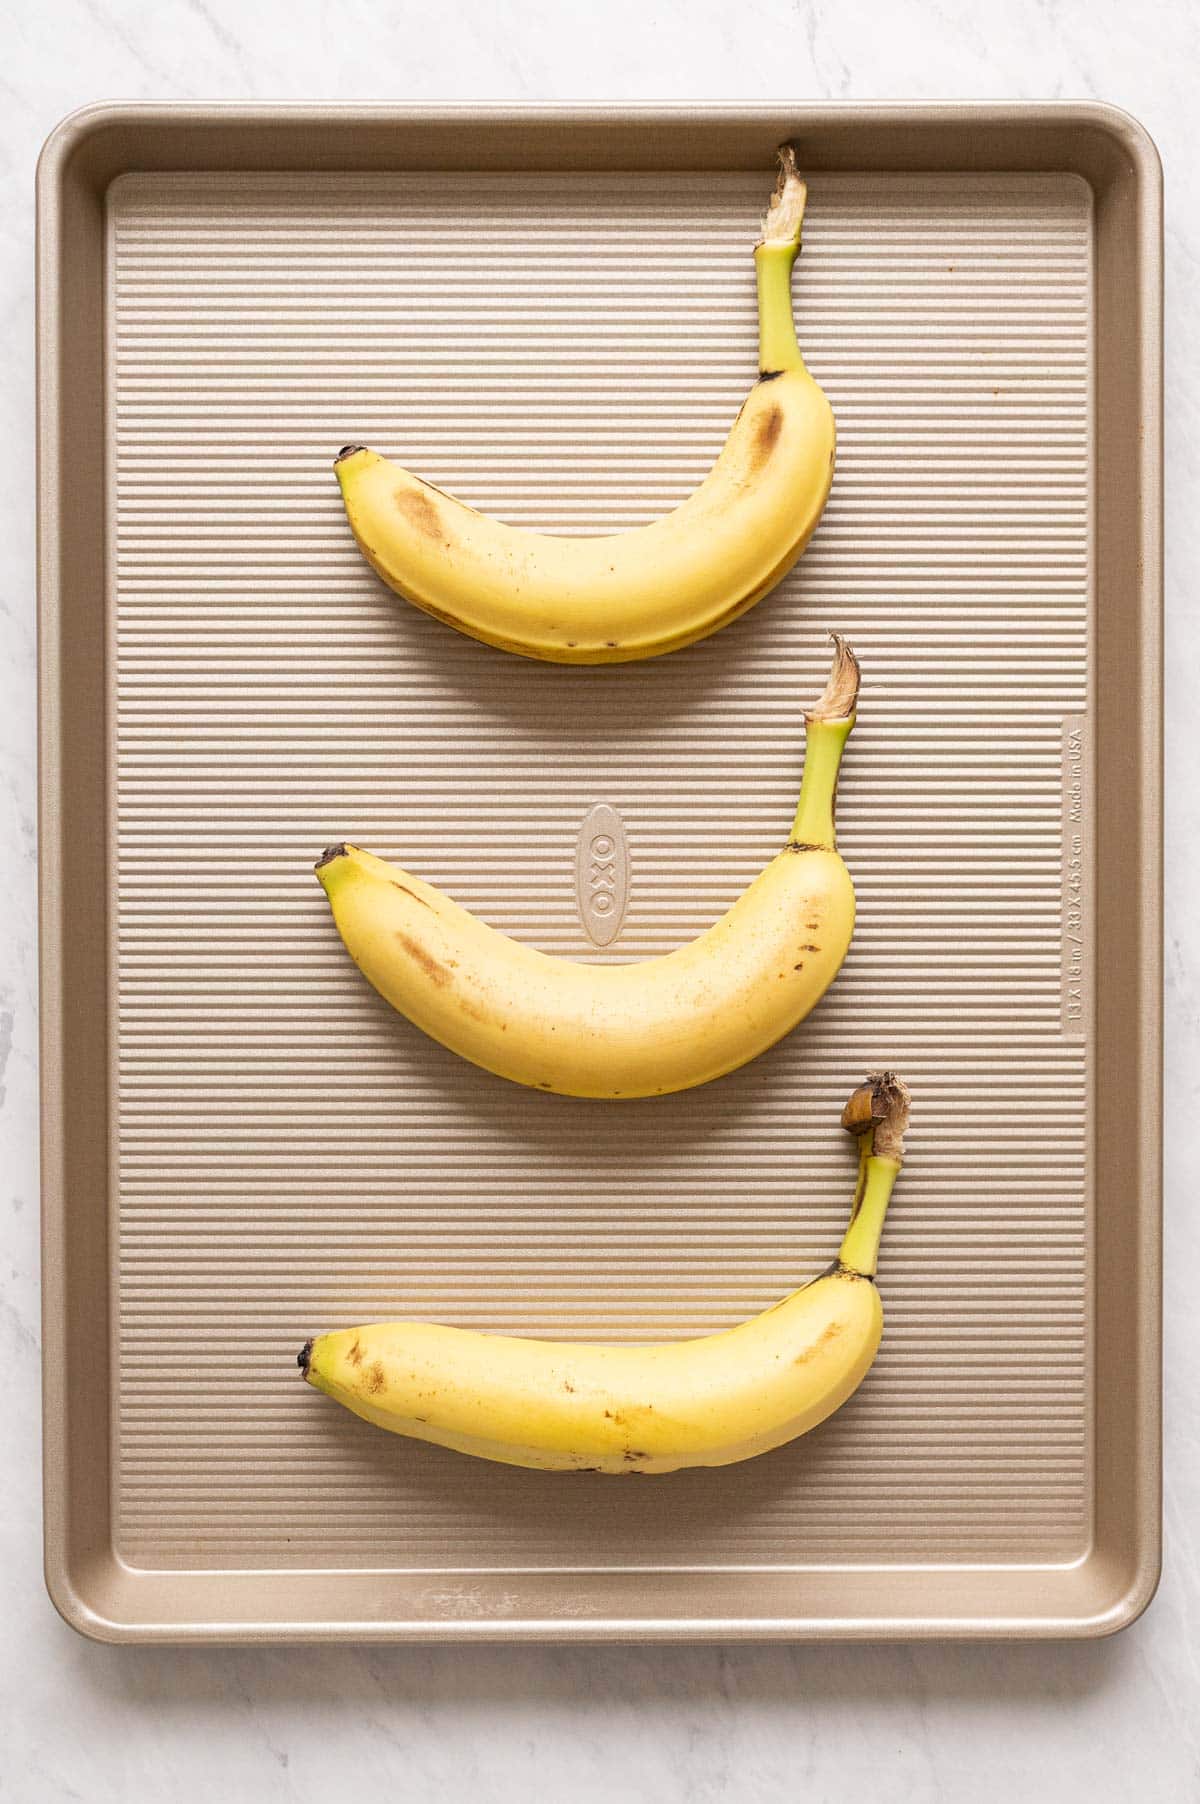 Three yellow bananas on a baking sheet.